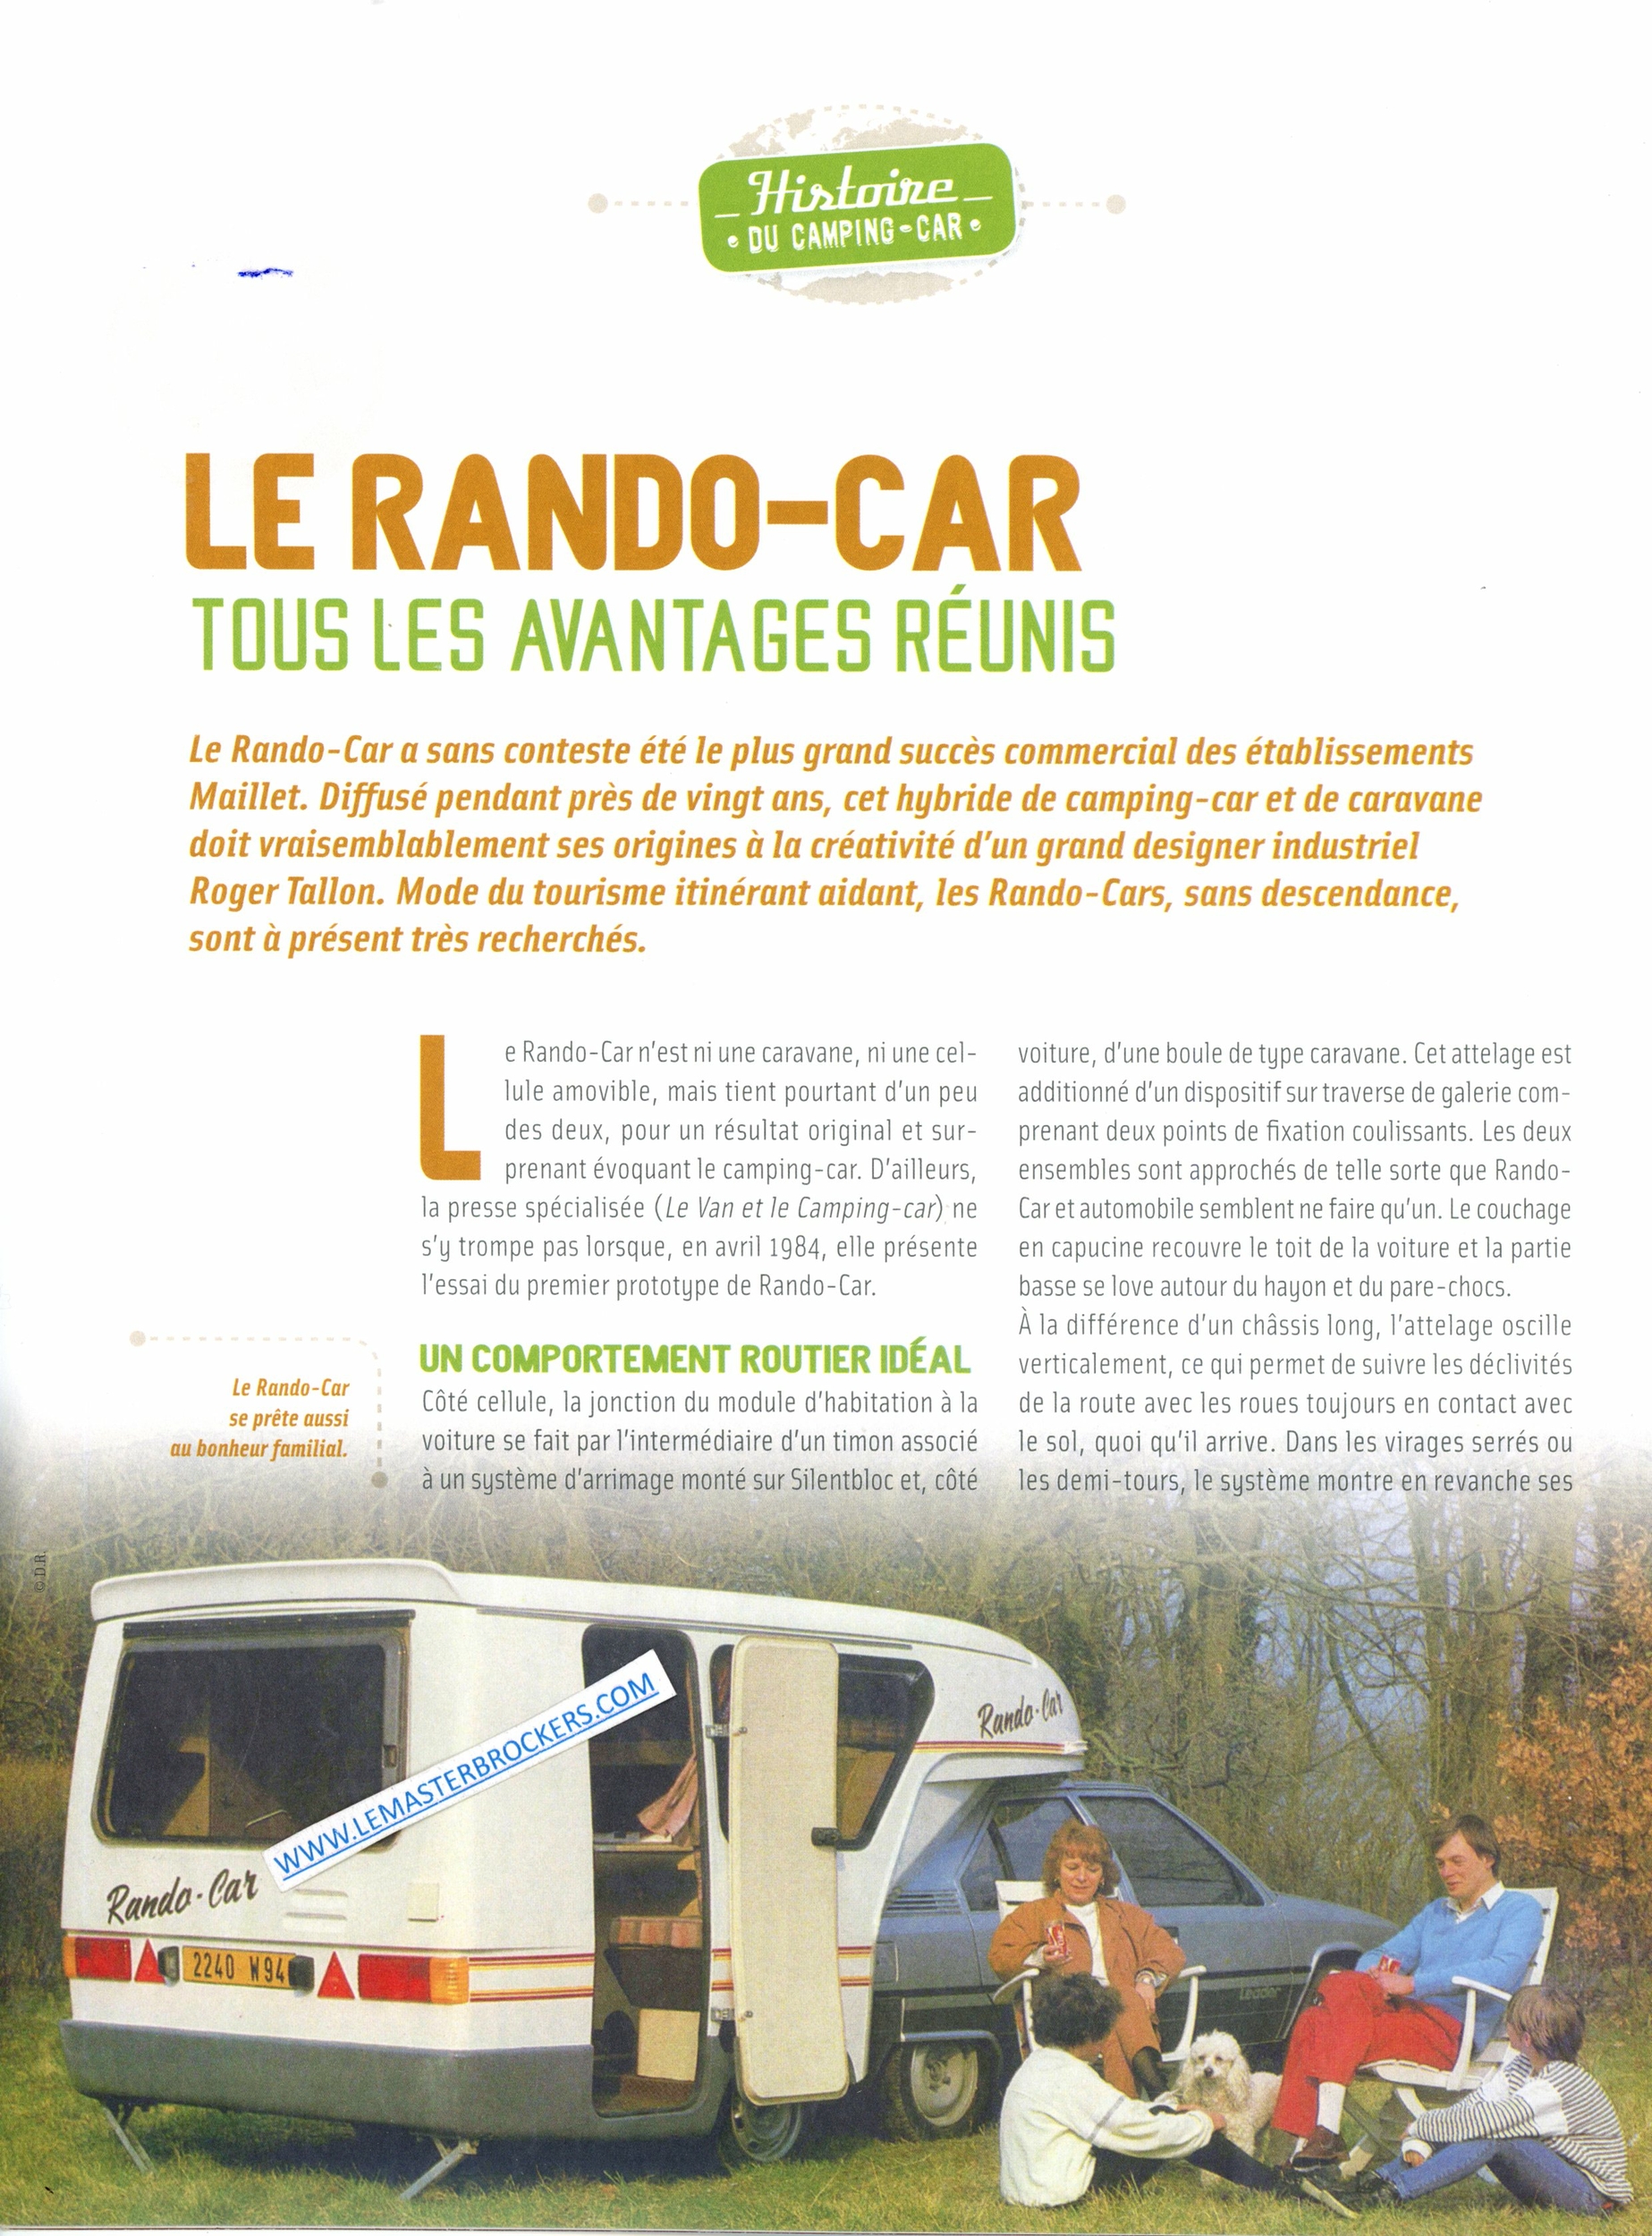 RANDO-CAR CLIPCAR